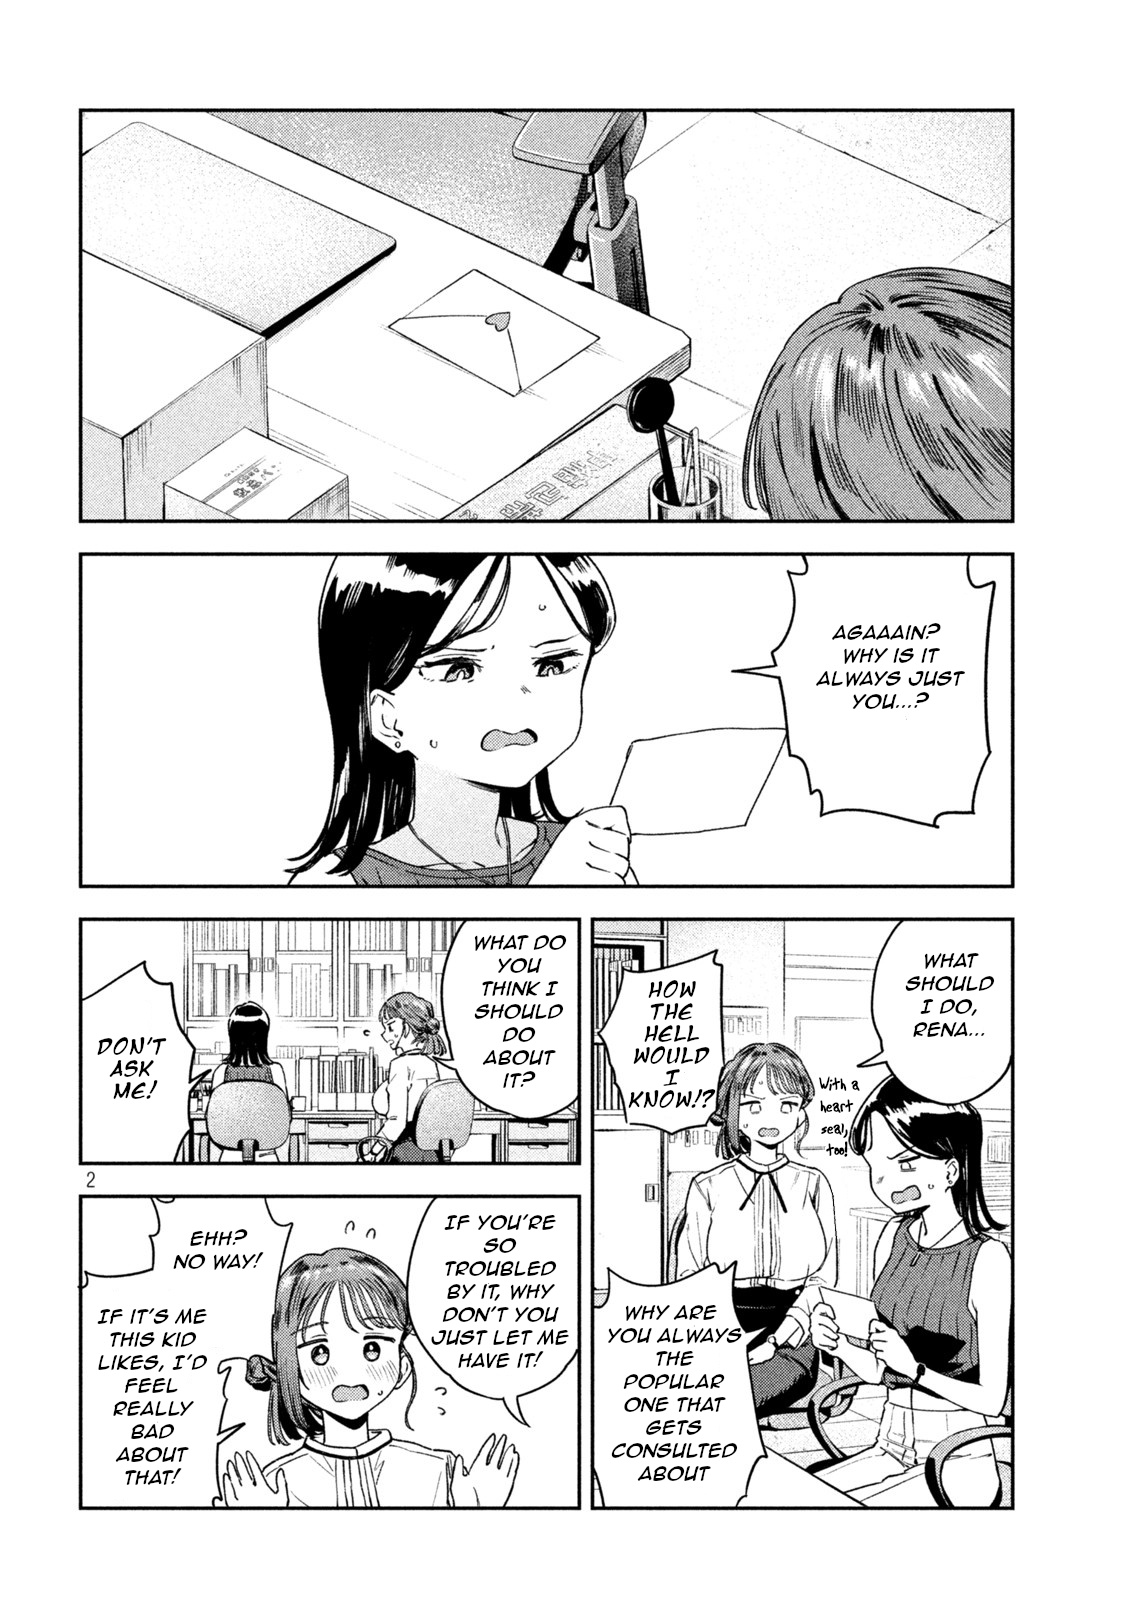 Miyo-Chan Sensei Said So - Page 2